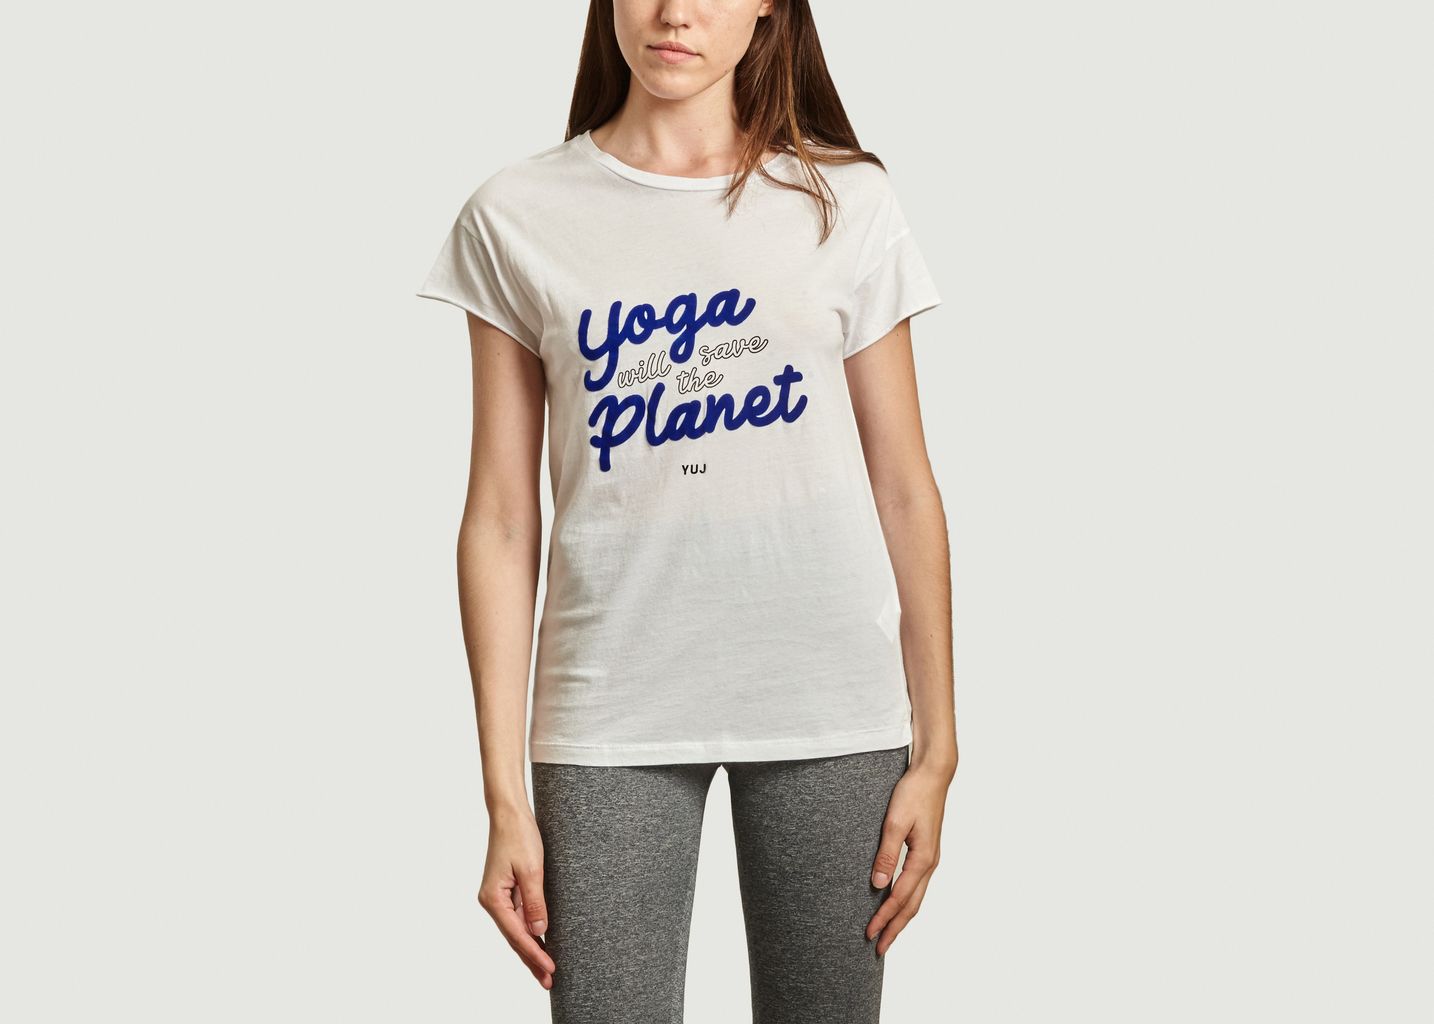 Yoga will save the planet t-shirt - YUJ Paris